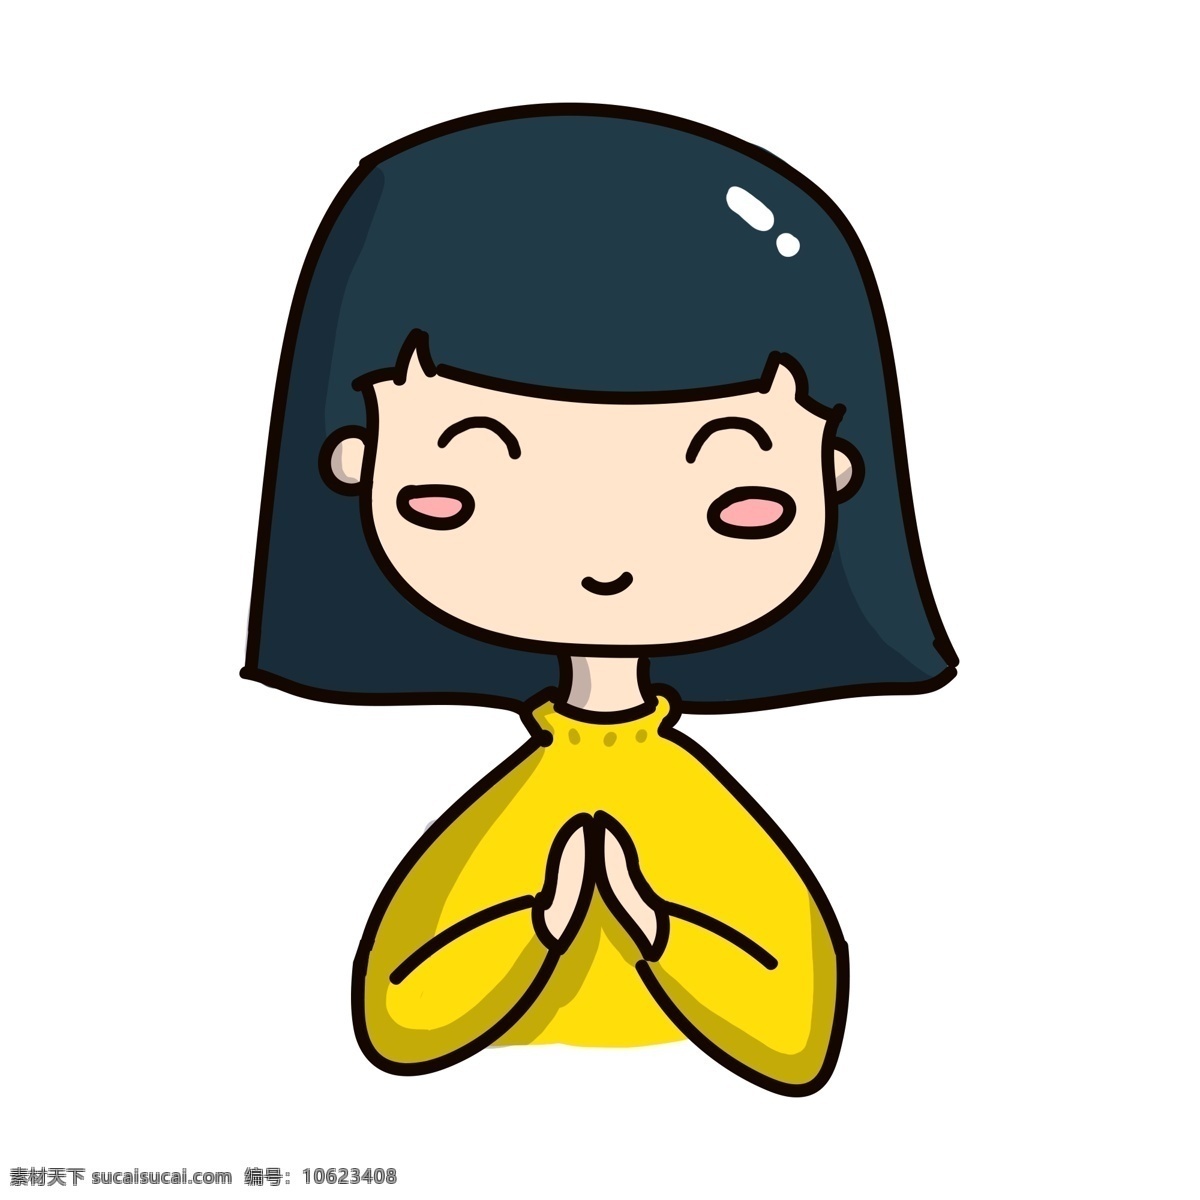 手绘 祈祷 表情 插画 手绘女孩 手绘表情 卡通女孩 祈祷表情 祷告 黄色毛衣 祈祷祝福插画